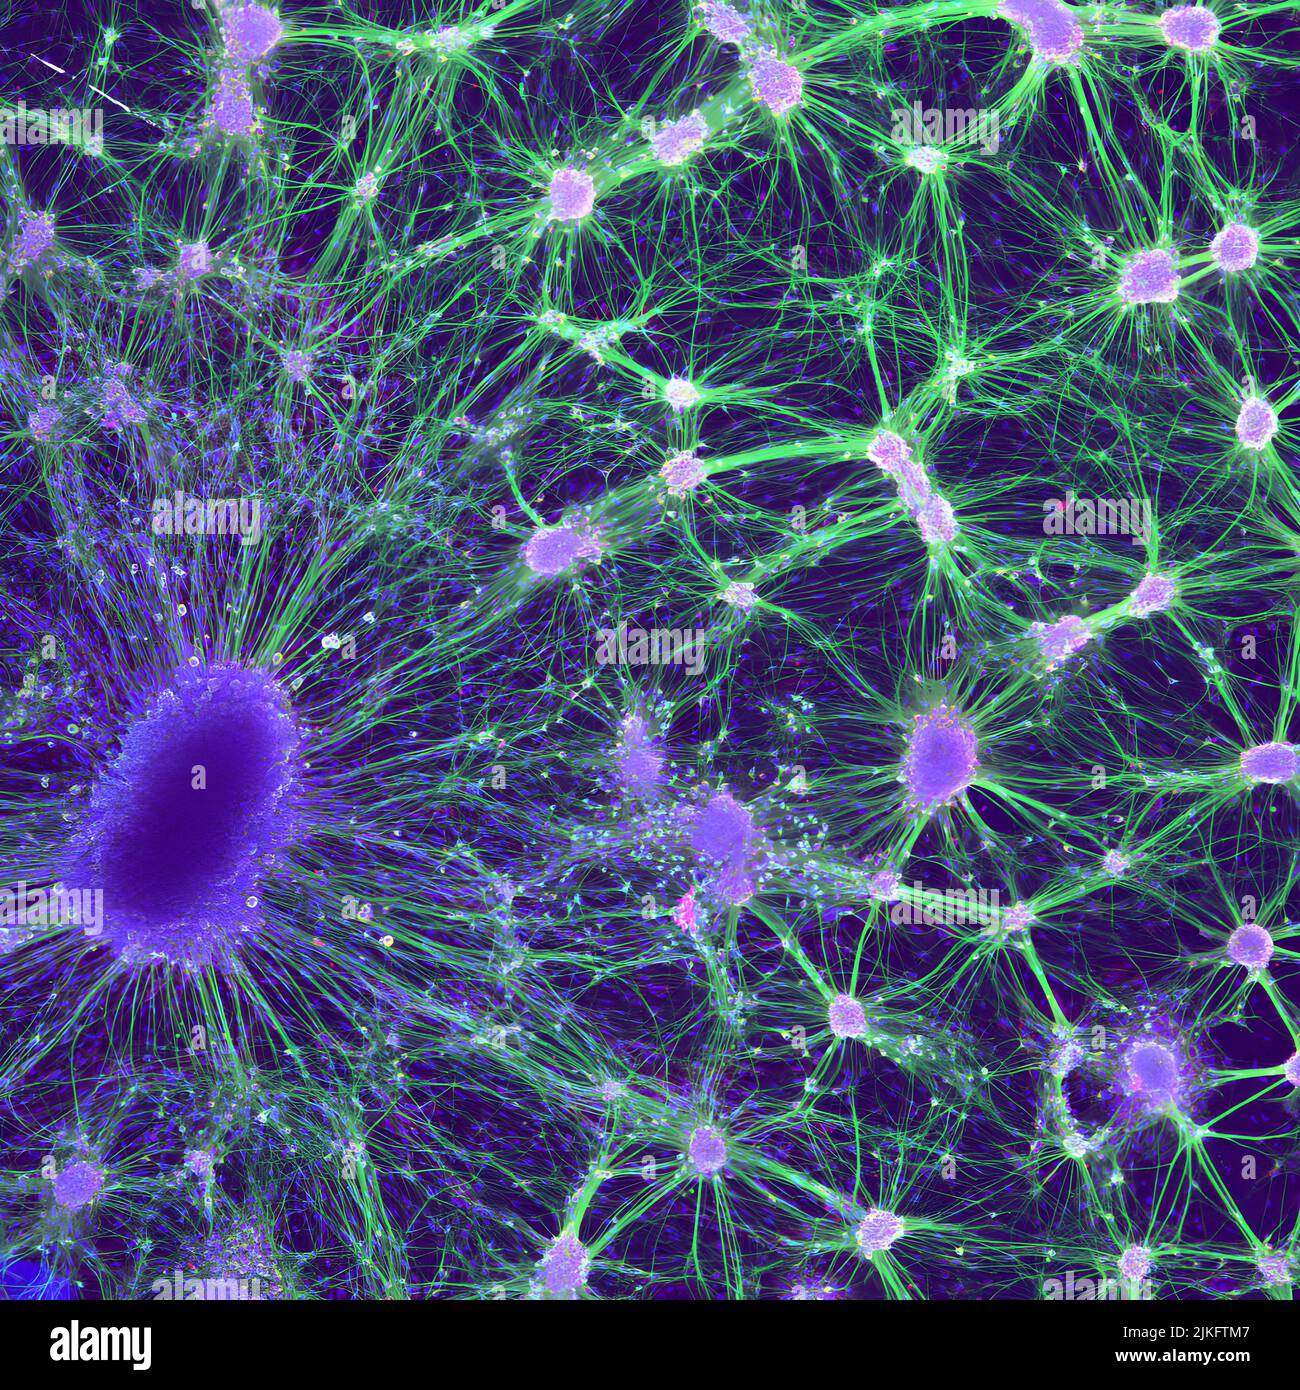 Dieses Bild zeigt Nervenzellen einer embryonalen Ratte, die in einer Petrischale wachsen. Unten links befindet sich ein dorsaler Wurzelganglion (dunkelviolett), eine Gruppe von sensorischen Nervenkörpern, die normalerweise außerhalb des Rückenmarks gefunden werden. Rechts befinden sich die Kerne (hellviolett) und Axone (grün) von Motoneuronen, die Nervenzellen sind, die an der Bildung wichtiger Signalnetzwerke beteiligt sind. Stockfoto